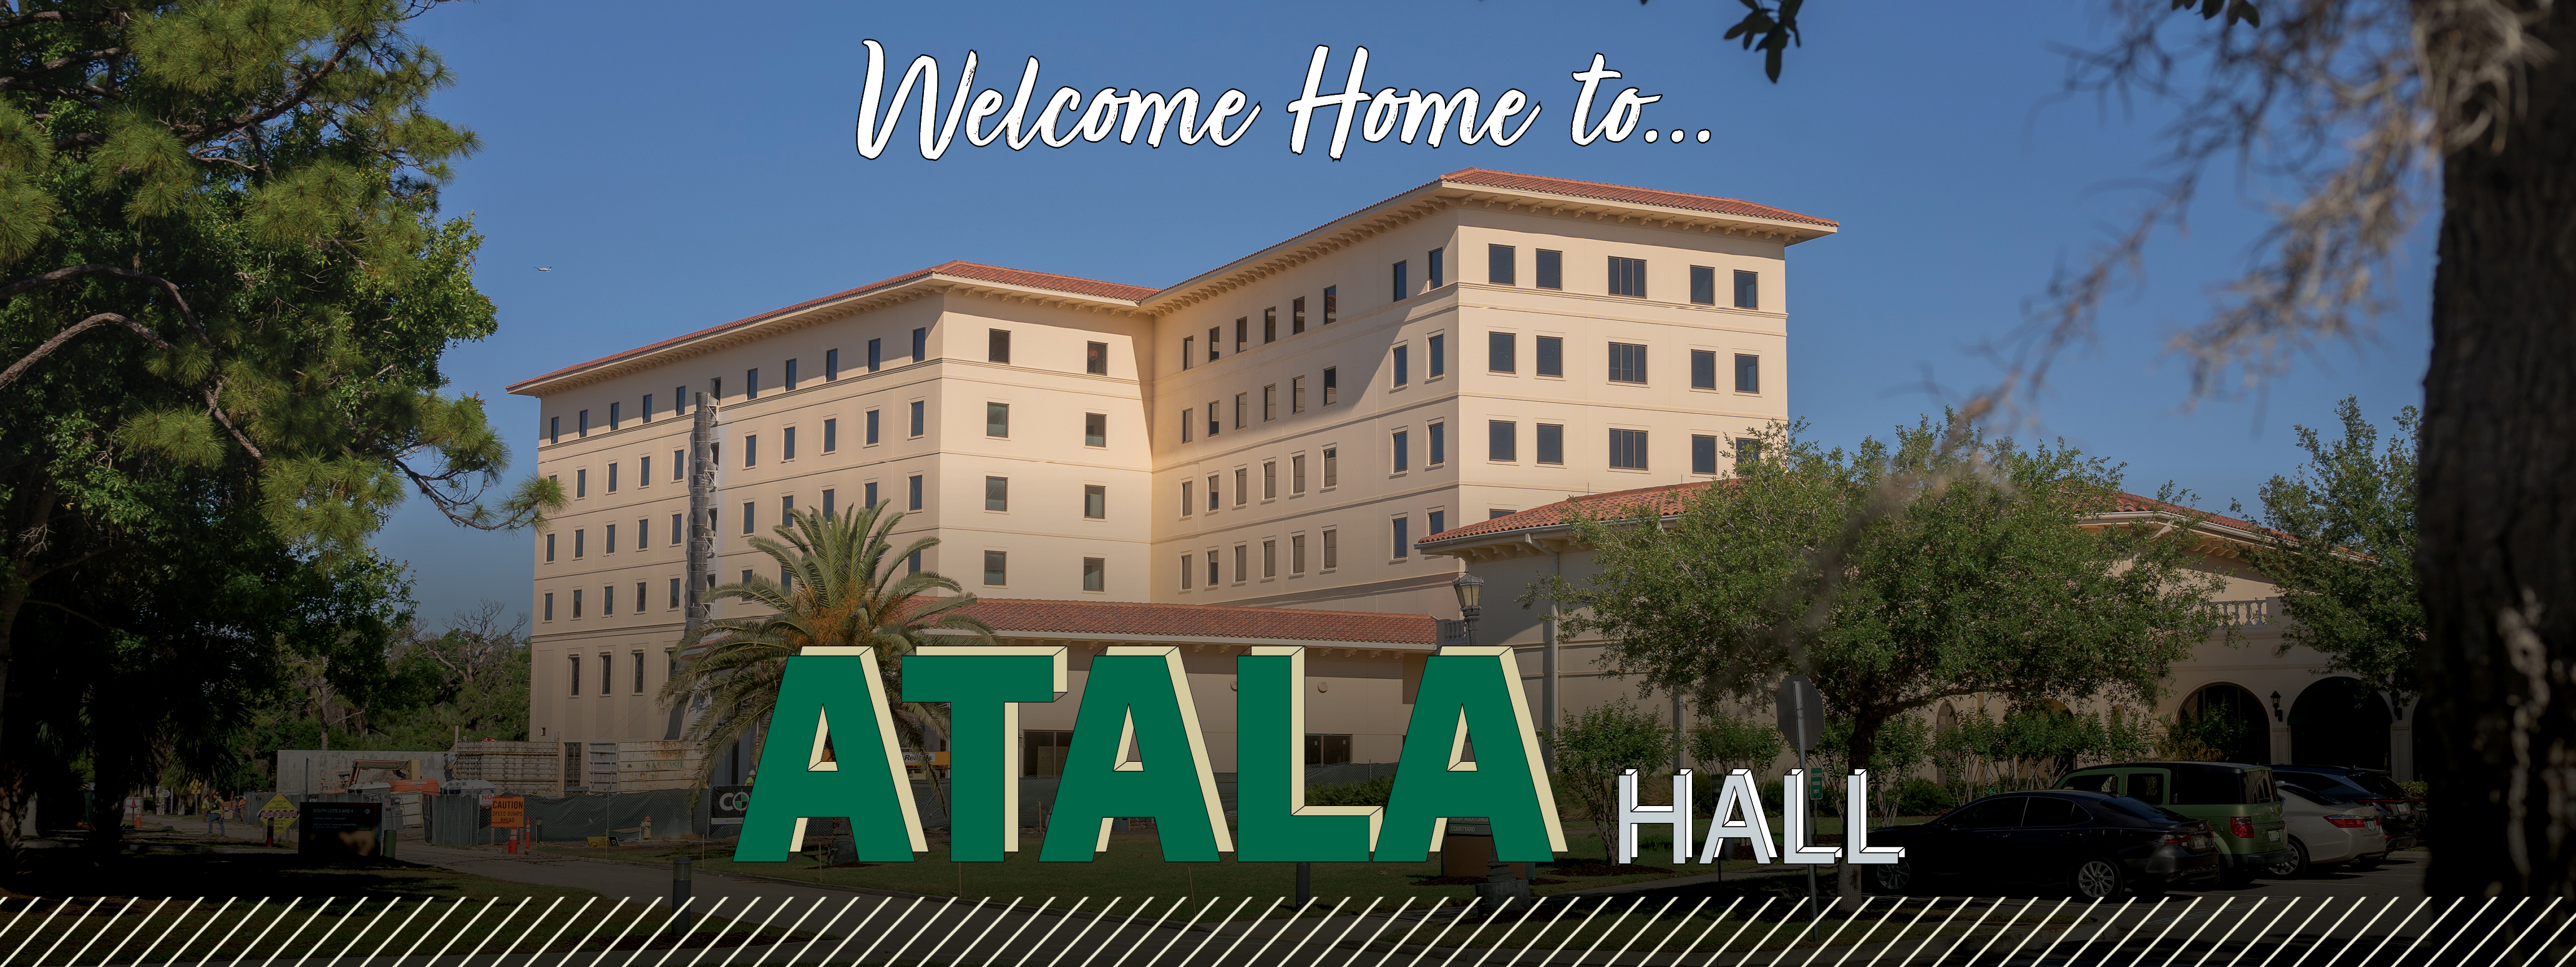 Welcome Home to Atala Hall! 